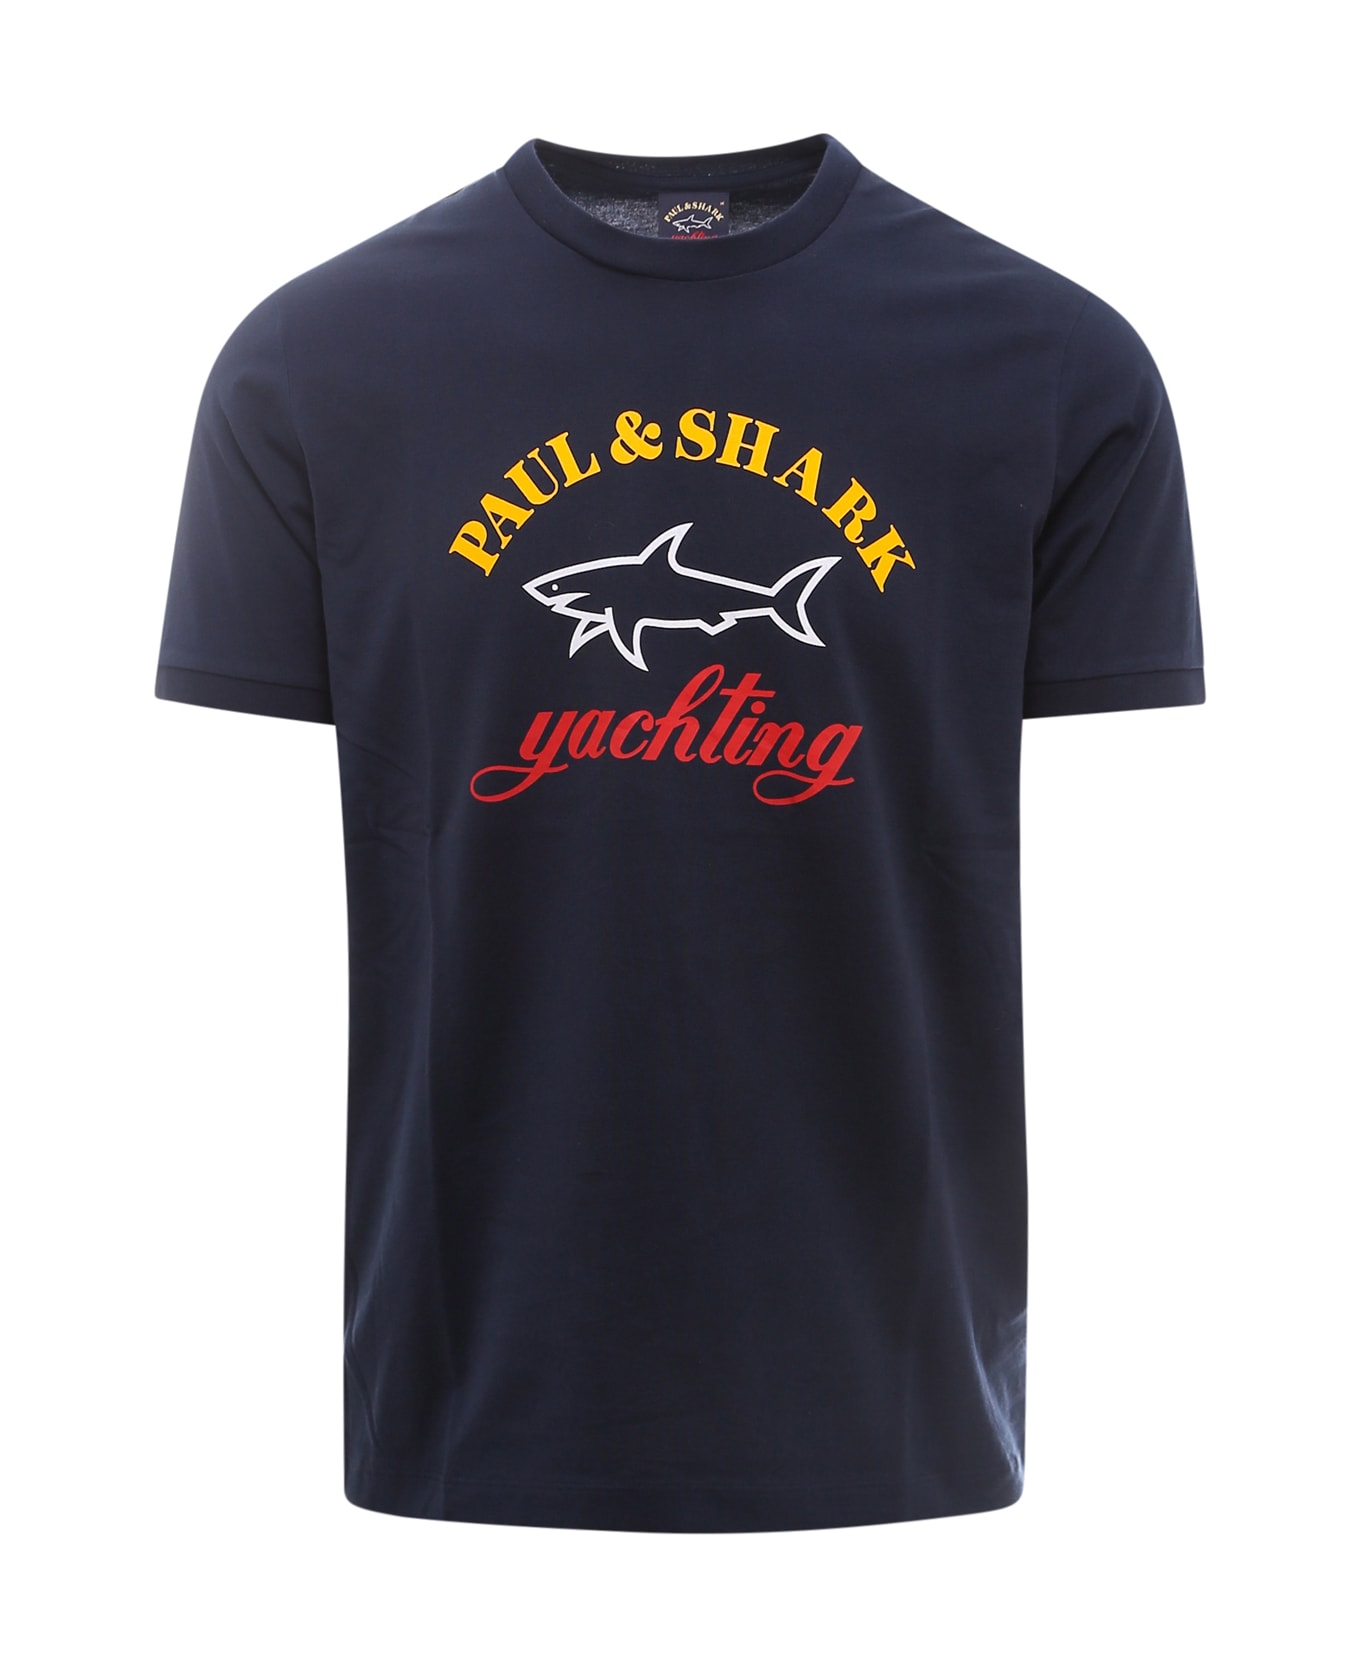 Paul&Shark T-shirt - C